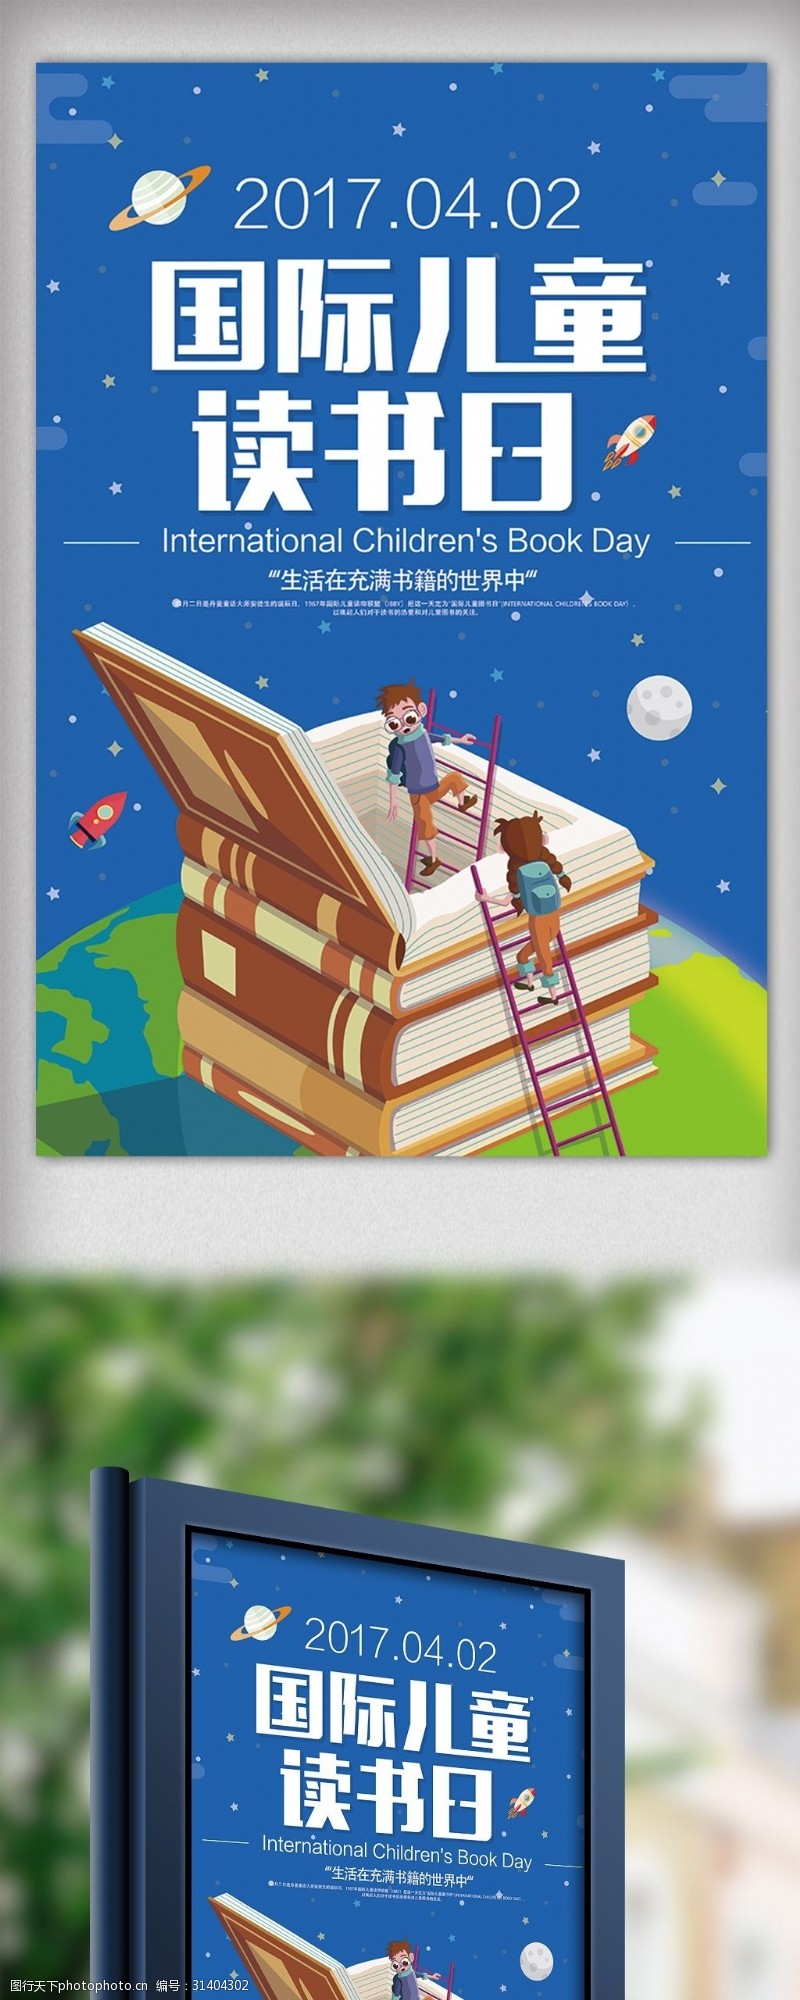 淘宝海报免费下载卡通风格世界读书日国际儿童读书日海报